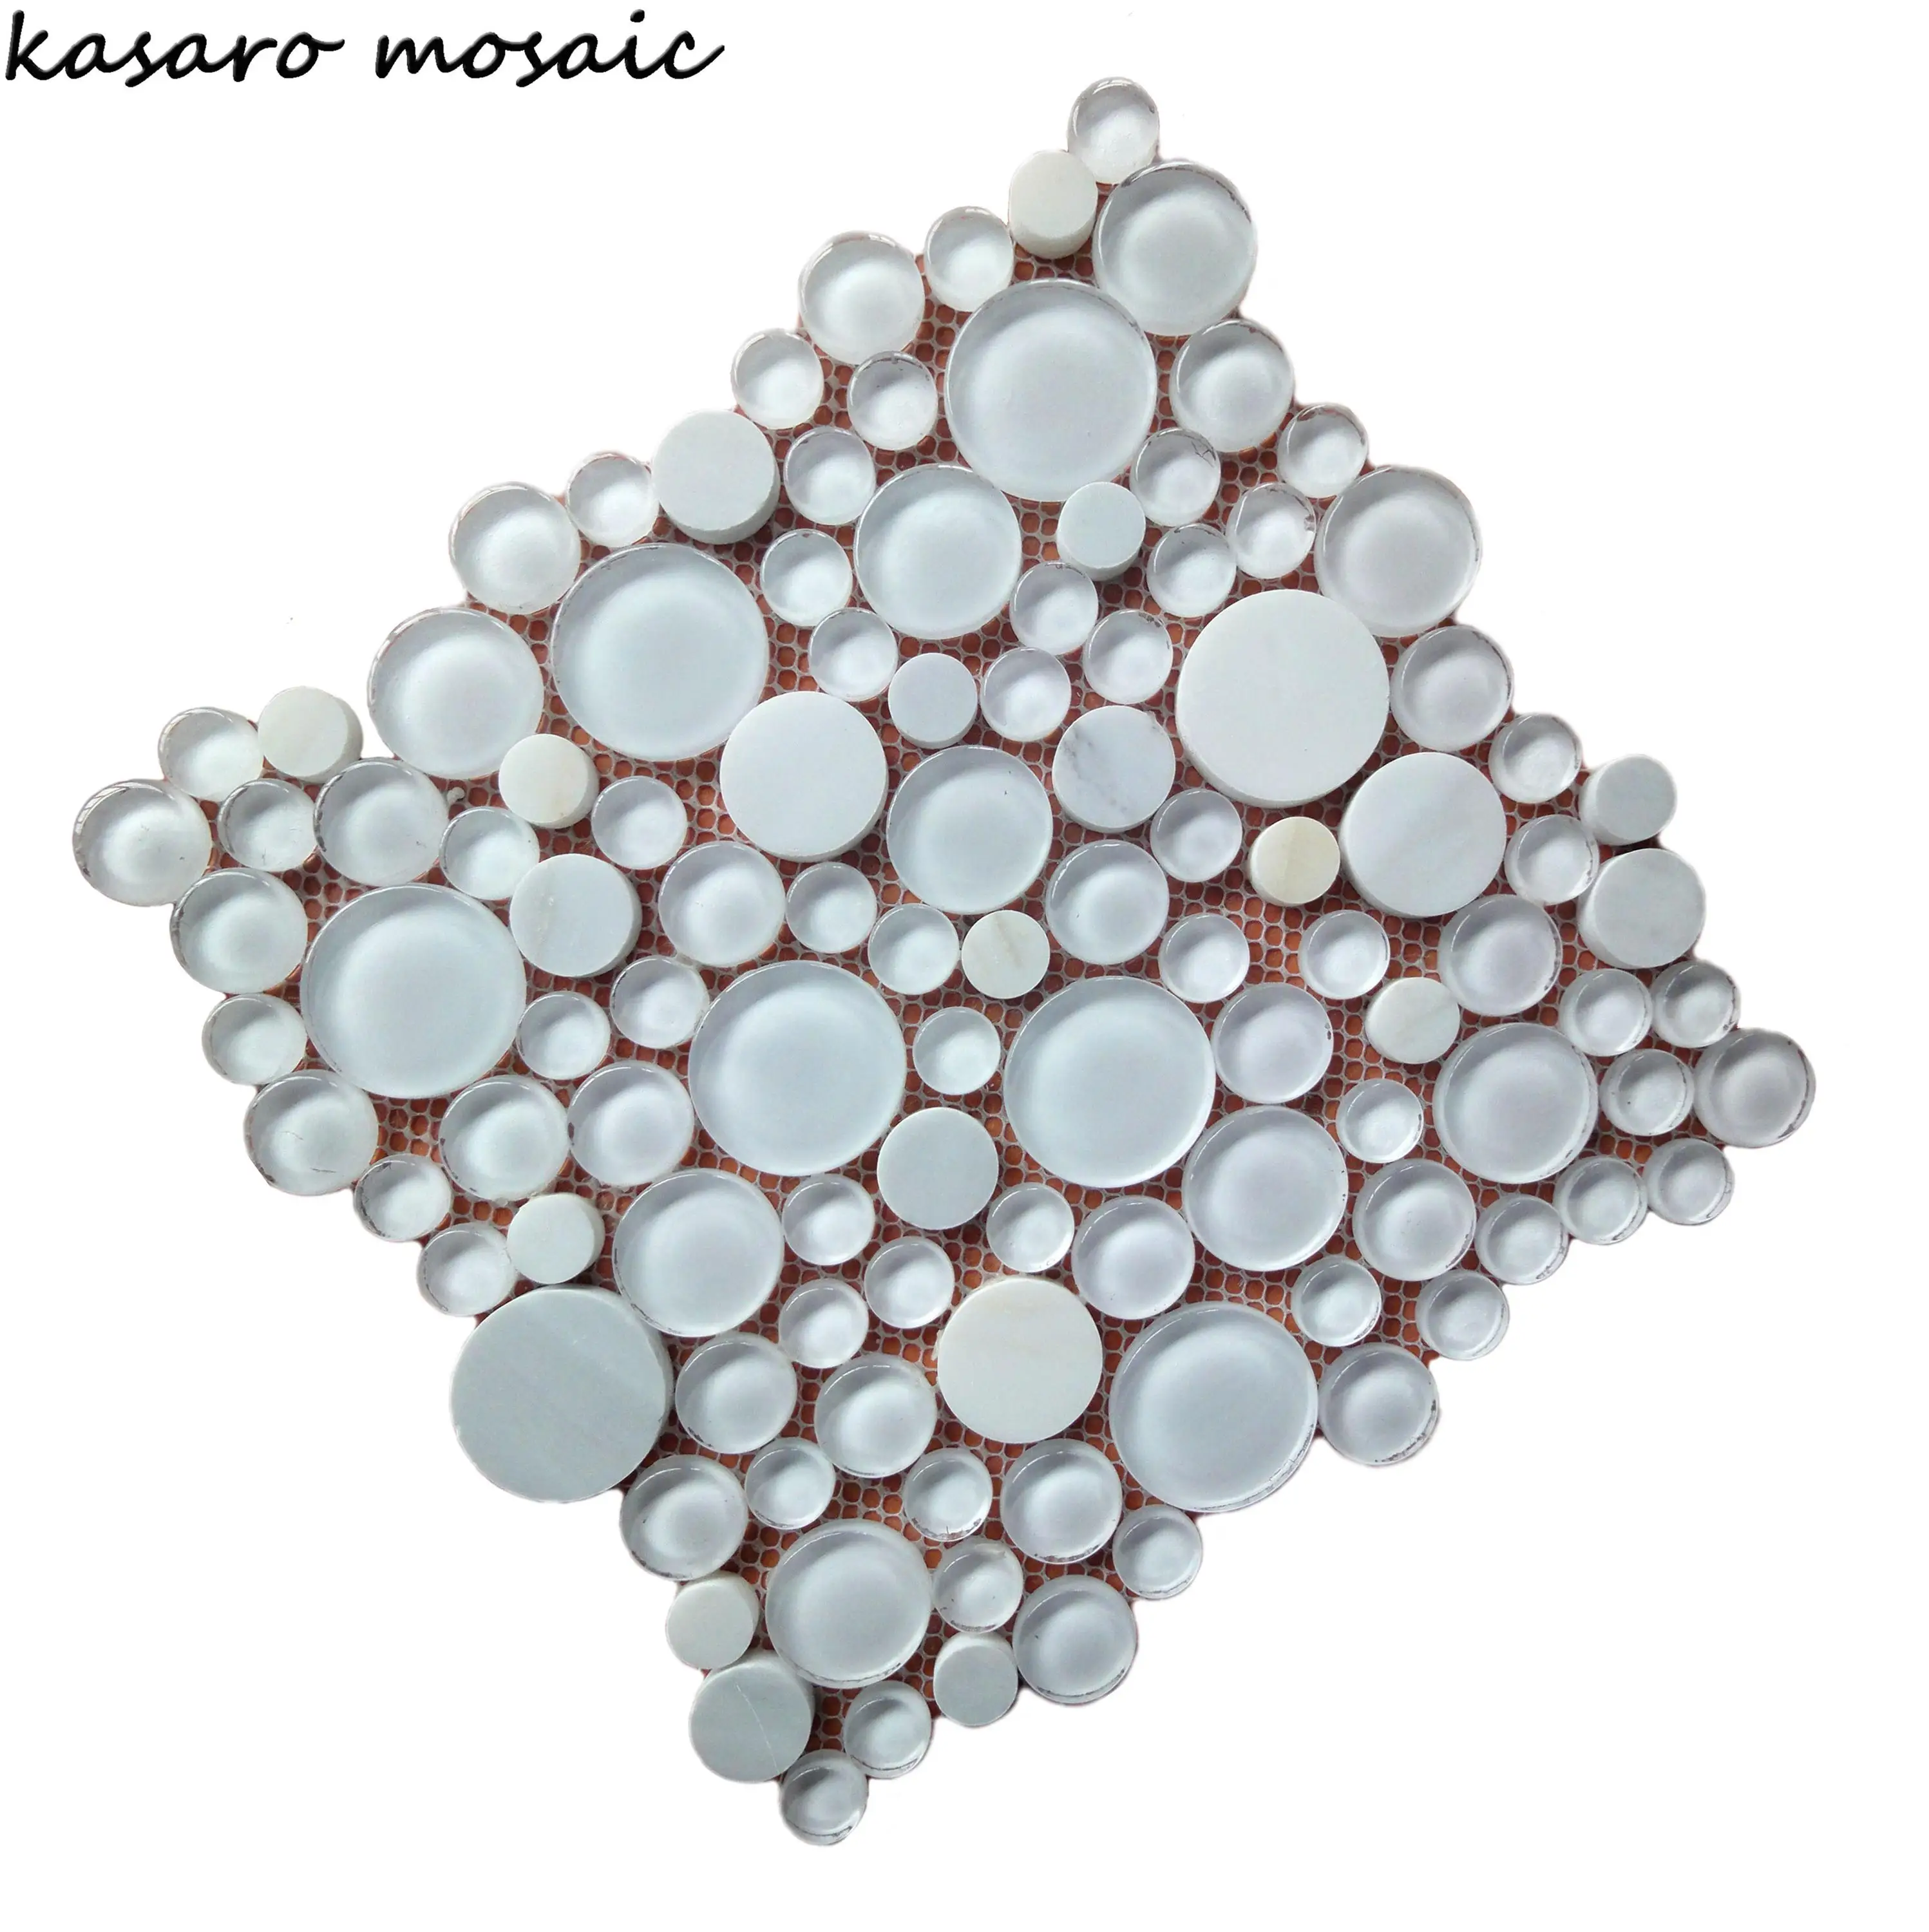 Milk White Stone Mix Glass Pebbles Mosaic Tiles Round Pebble Mosaic Medallion Floor Tile Patterns Glass Tile Pebble Mosaics